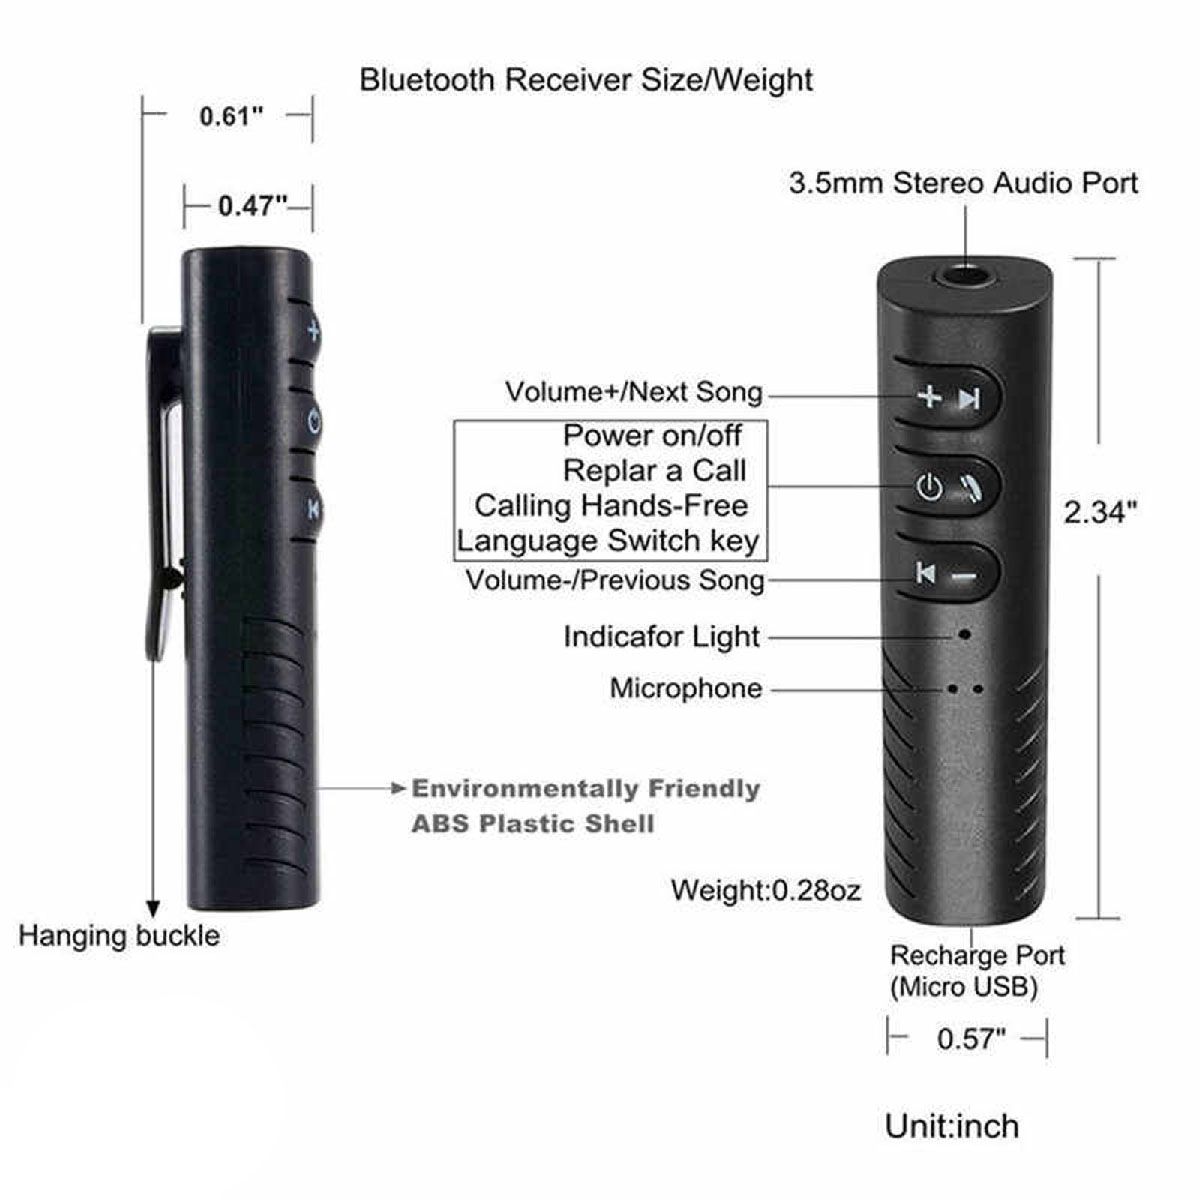 Беспроводной музыкальный приемник, AUX Bluetooth ресивер B09, цвет черный.